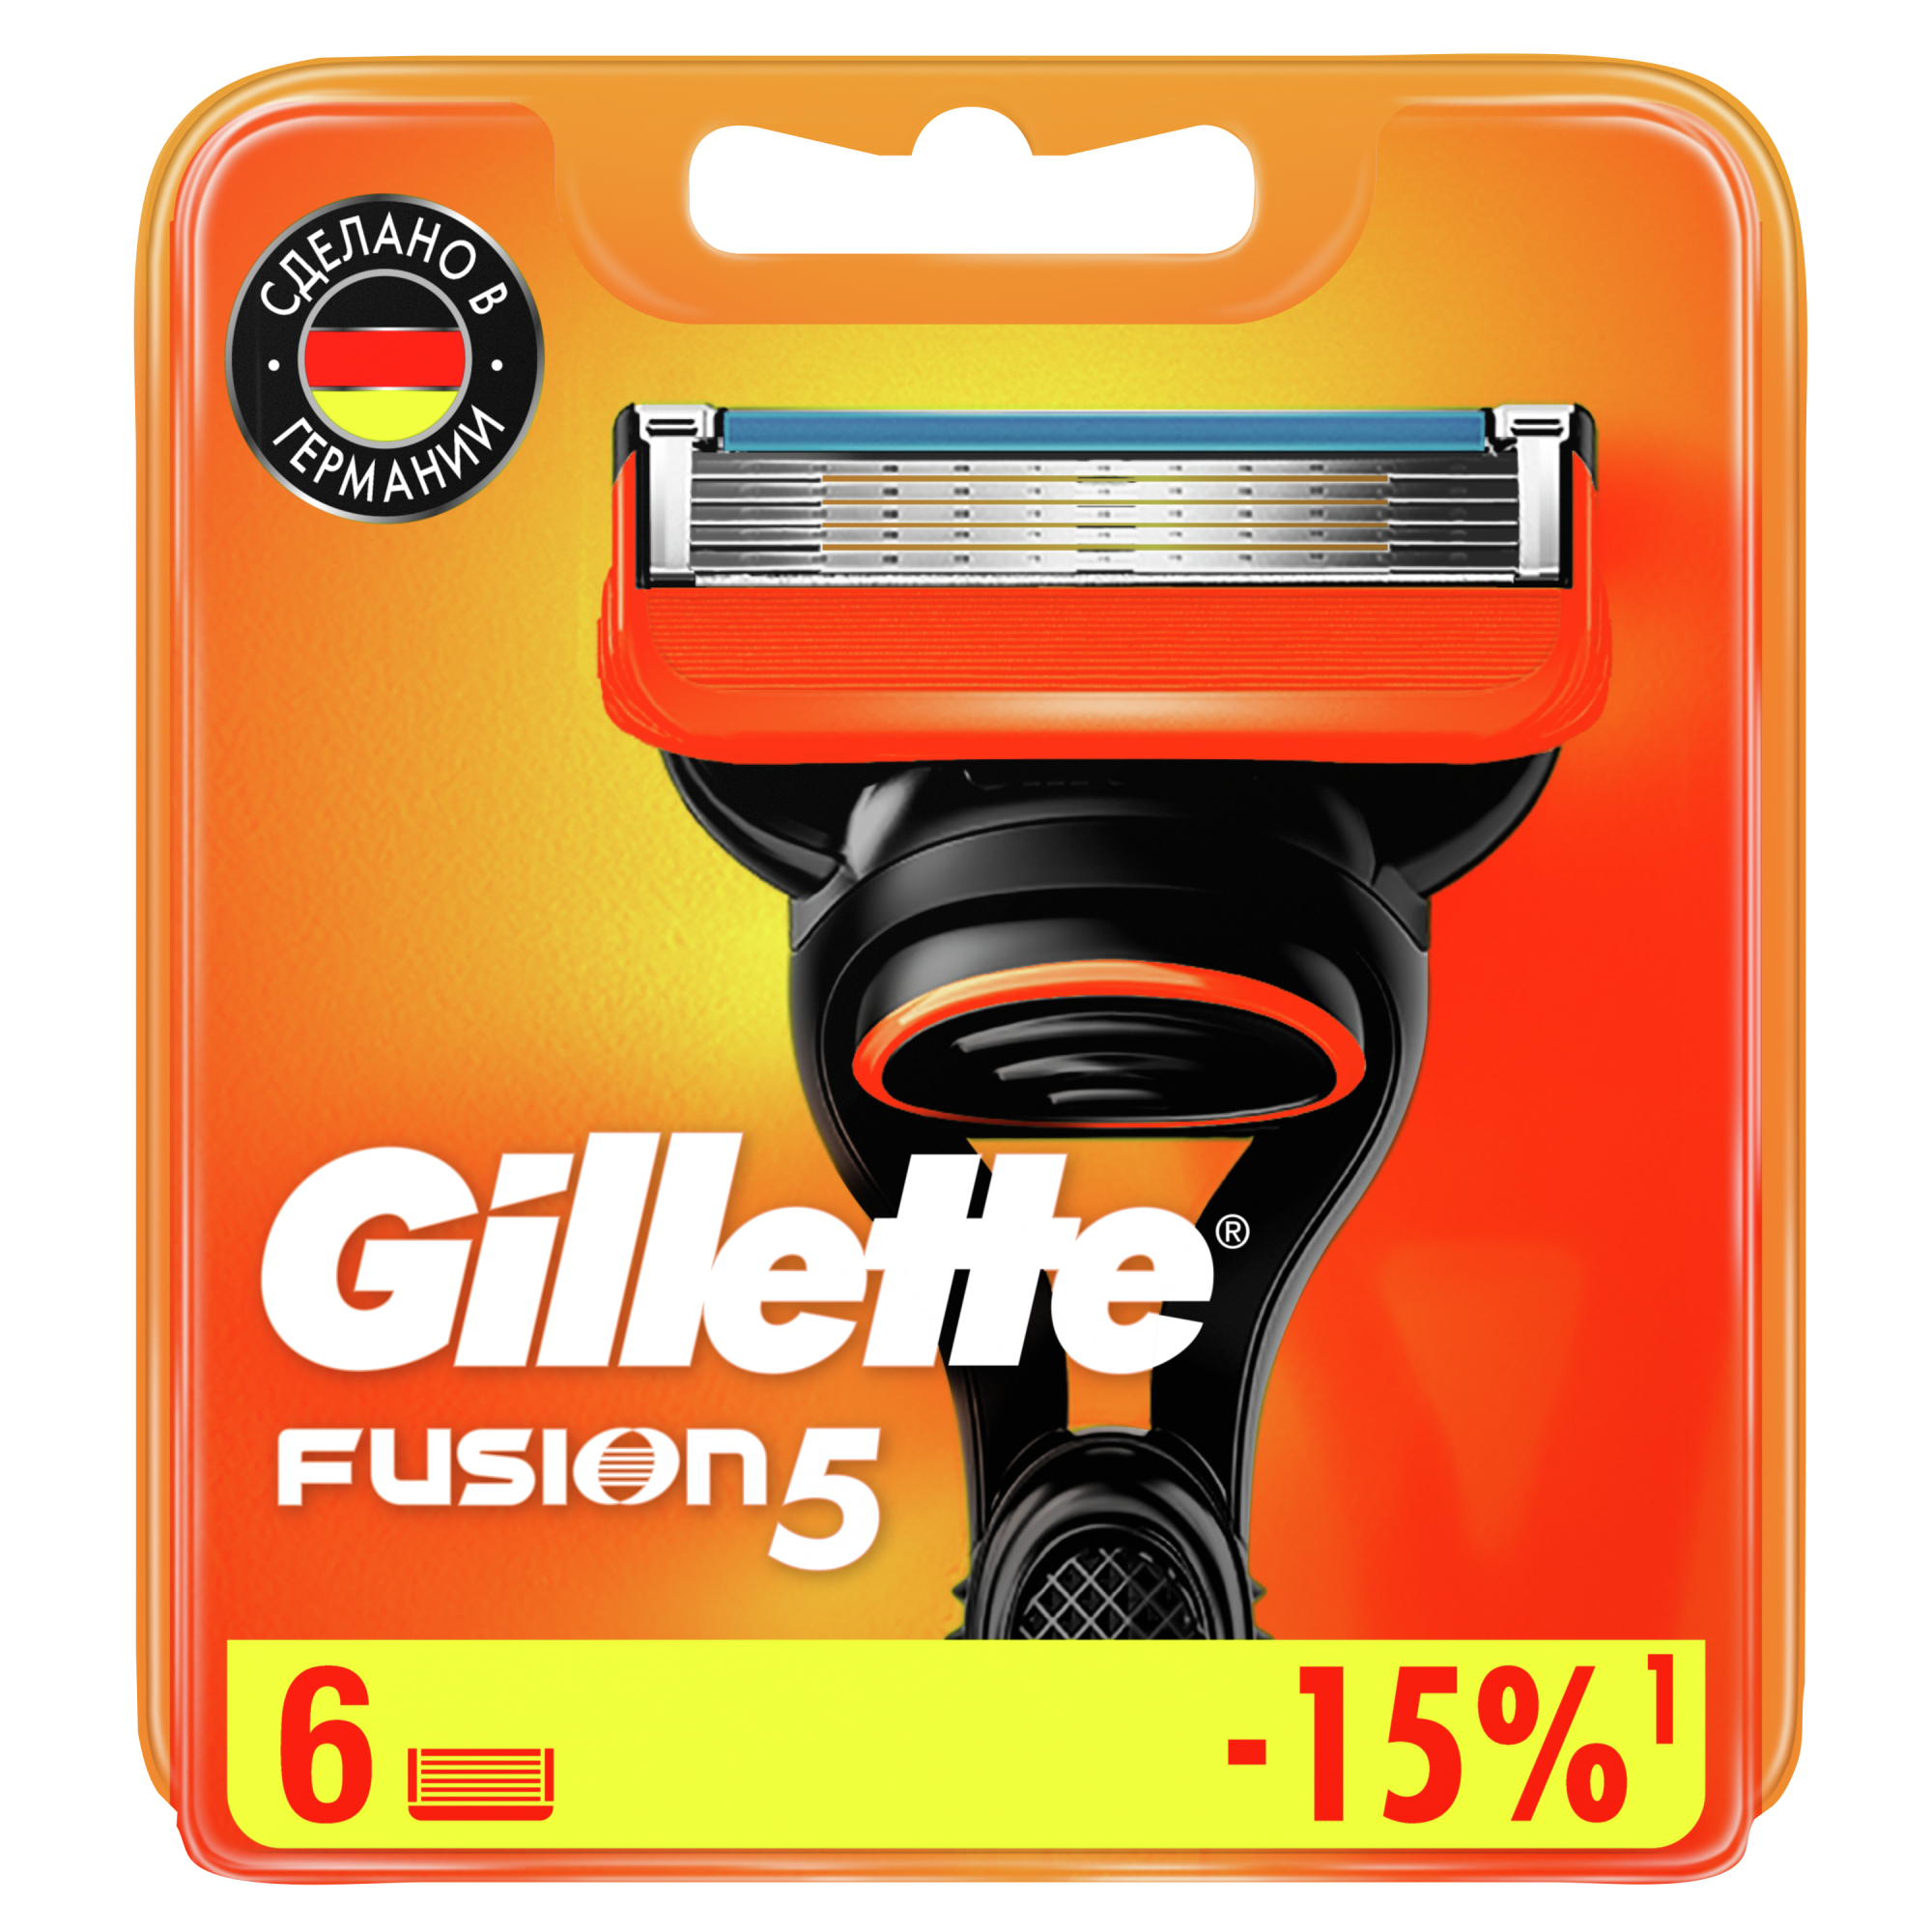 Сменные кассеты для мужской бритвы Gillette Fusion5 Power, с 5 лезвиями, c точным триммером для труднодоступных мест, для гладкого бритья надолго, 6 шт сменные трапециевидные лезвия для ножа airline